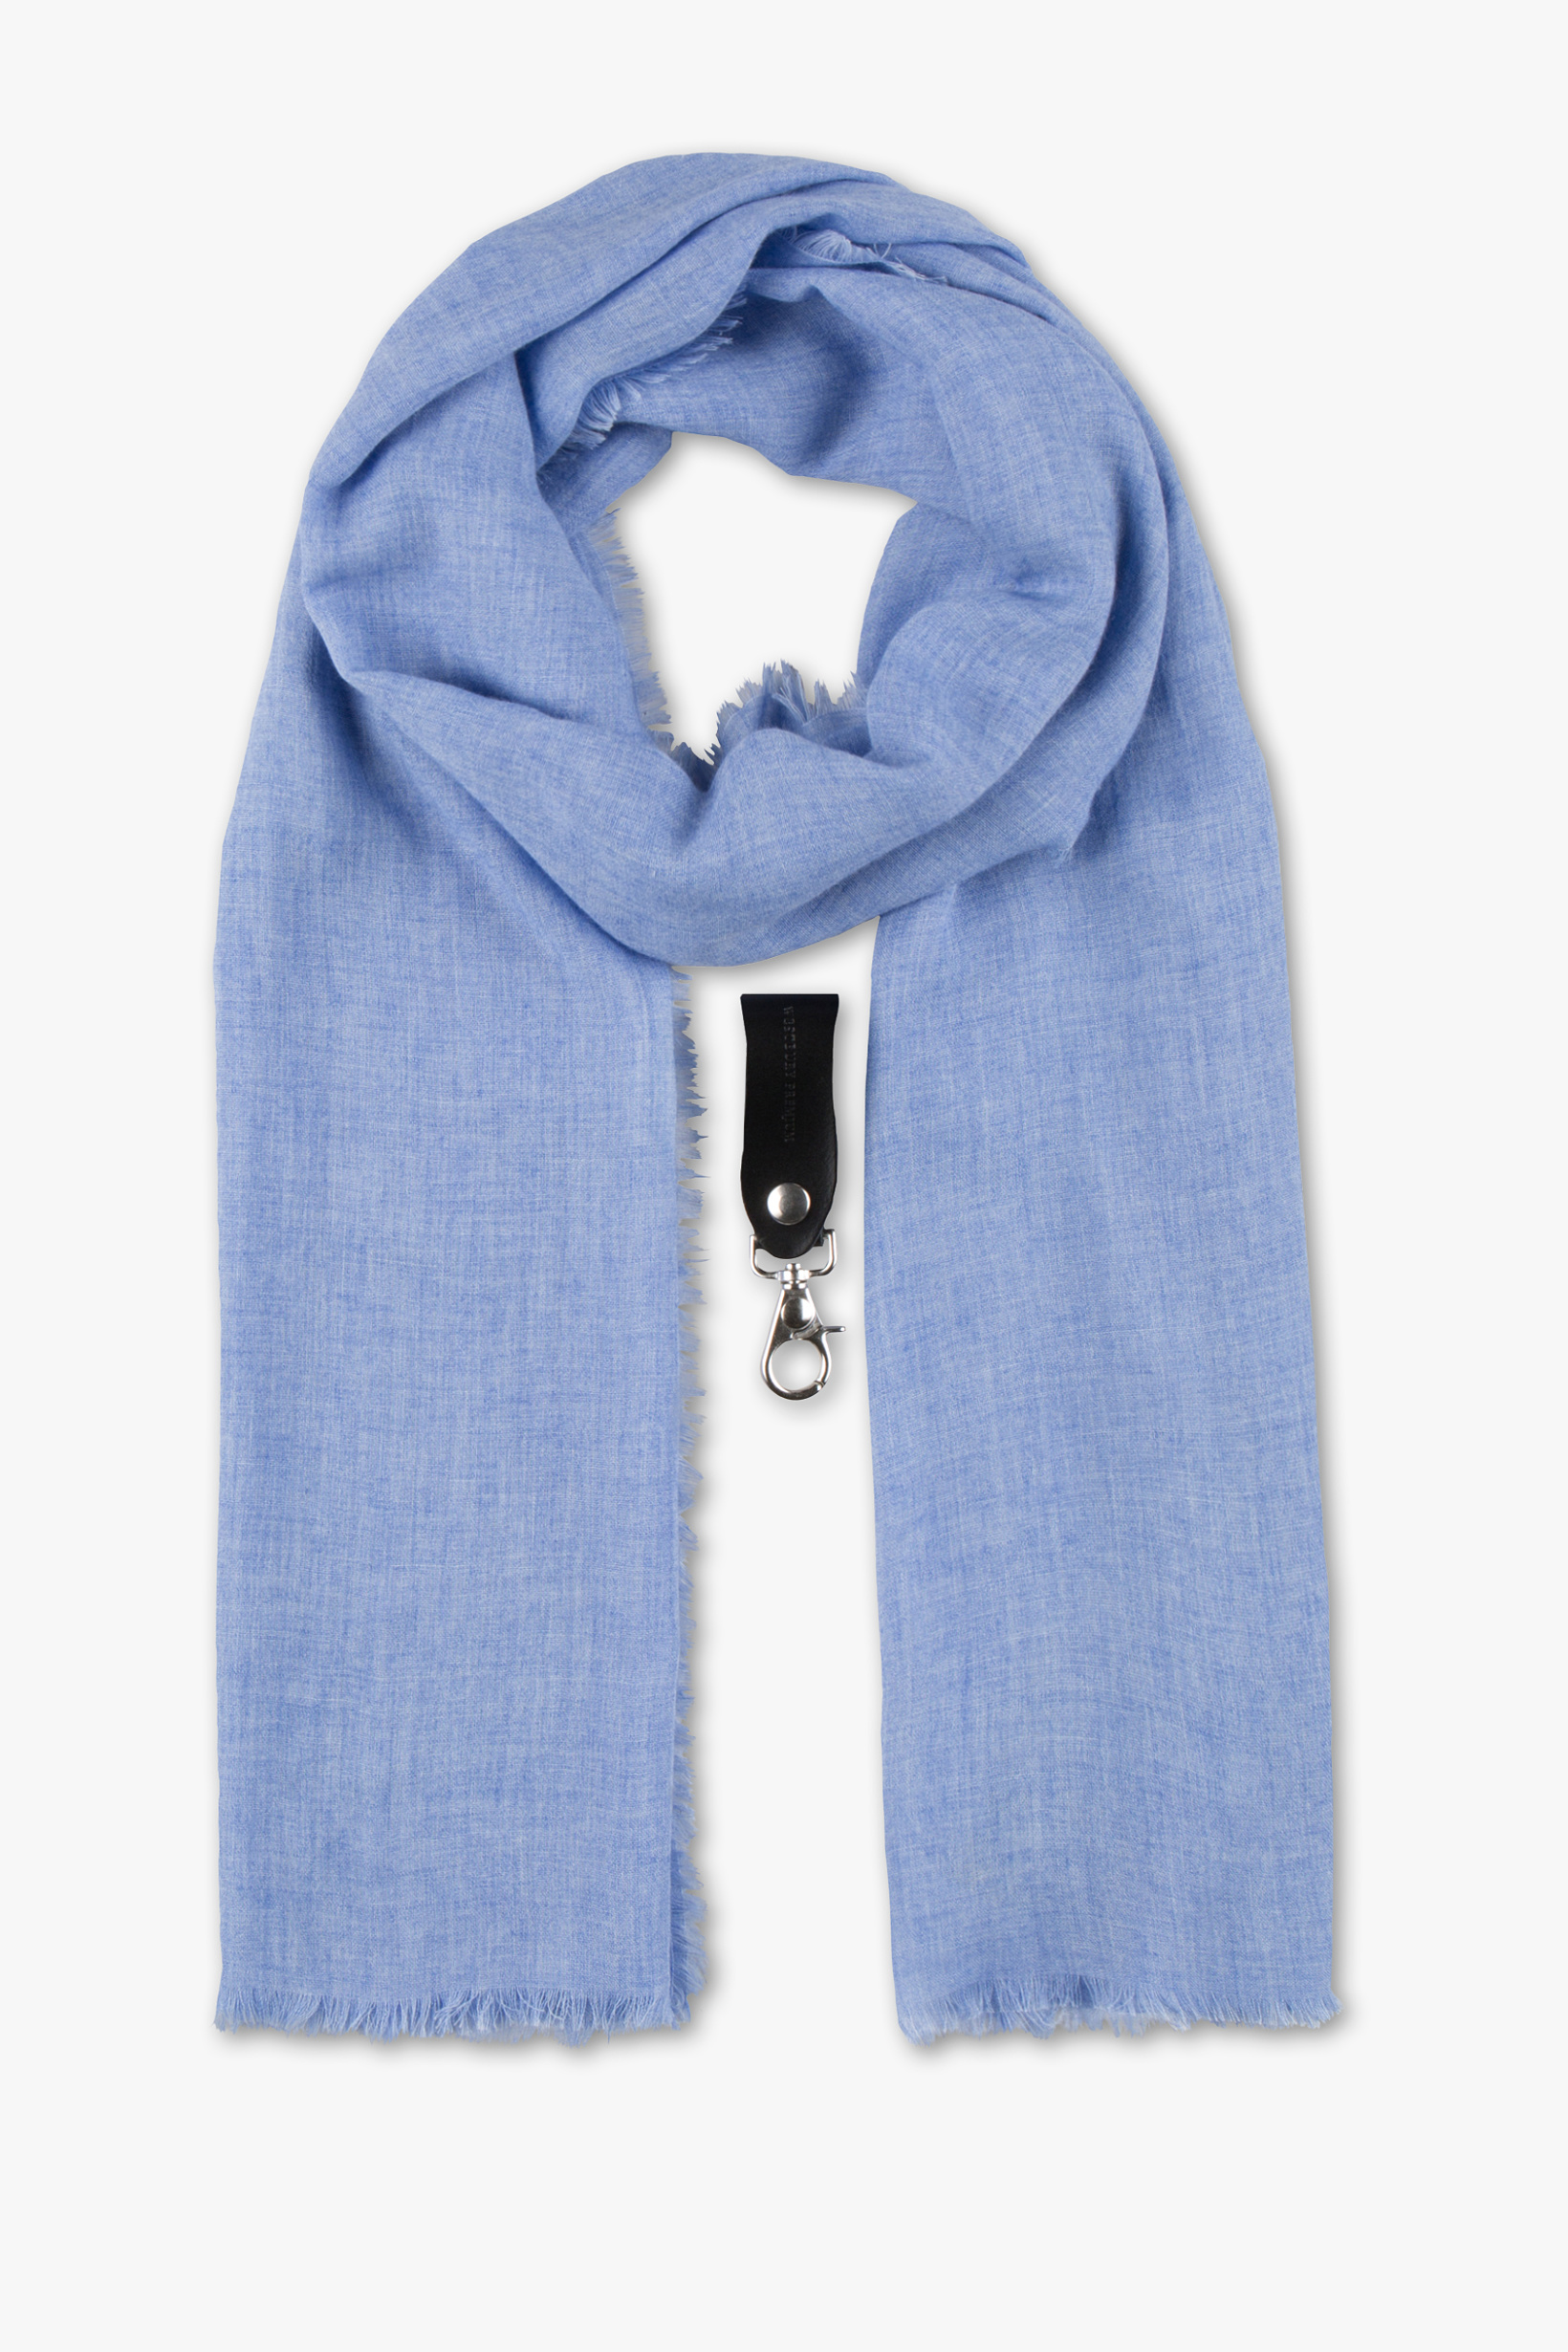 Westbury Premium Sjaal met sleutelhanger